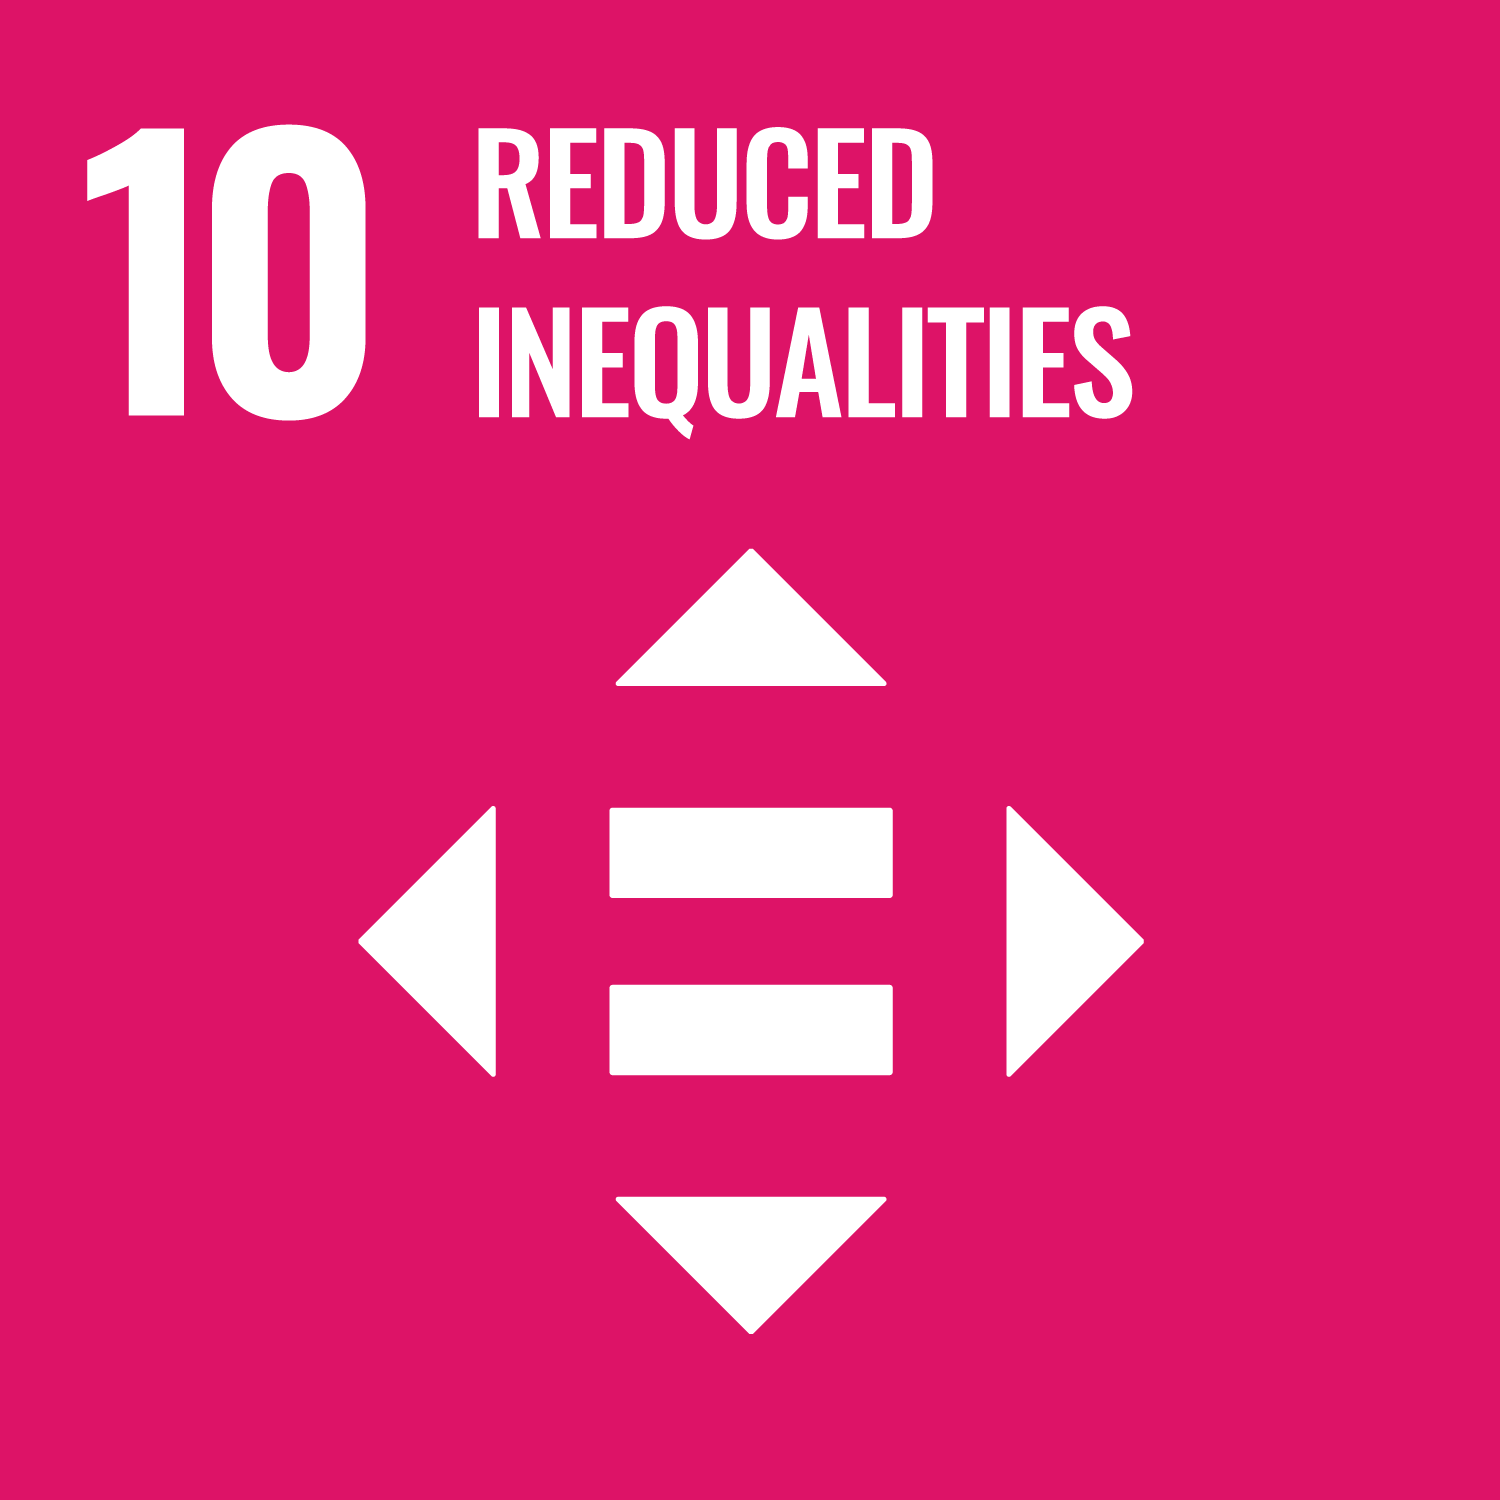 UN SDG 10: Reduced Inequalities